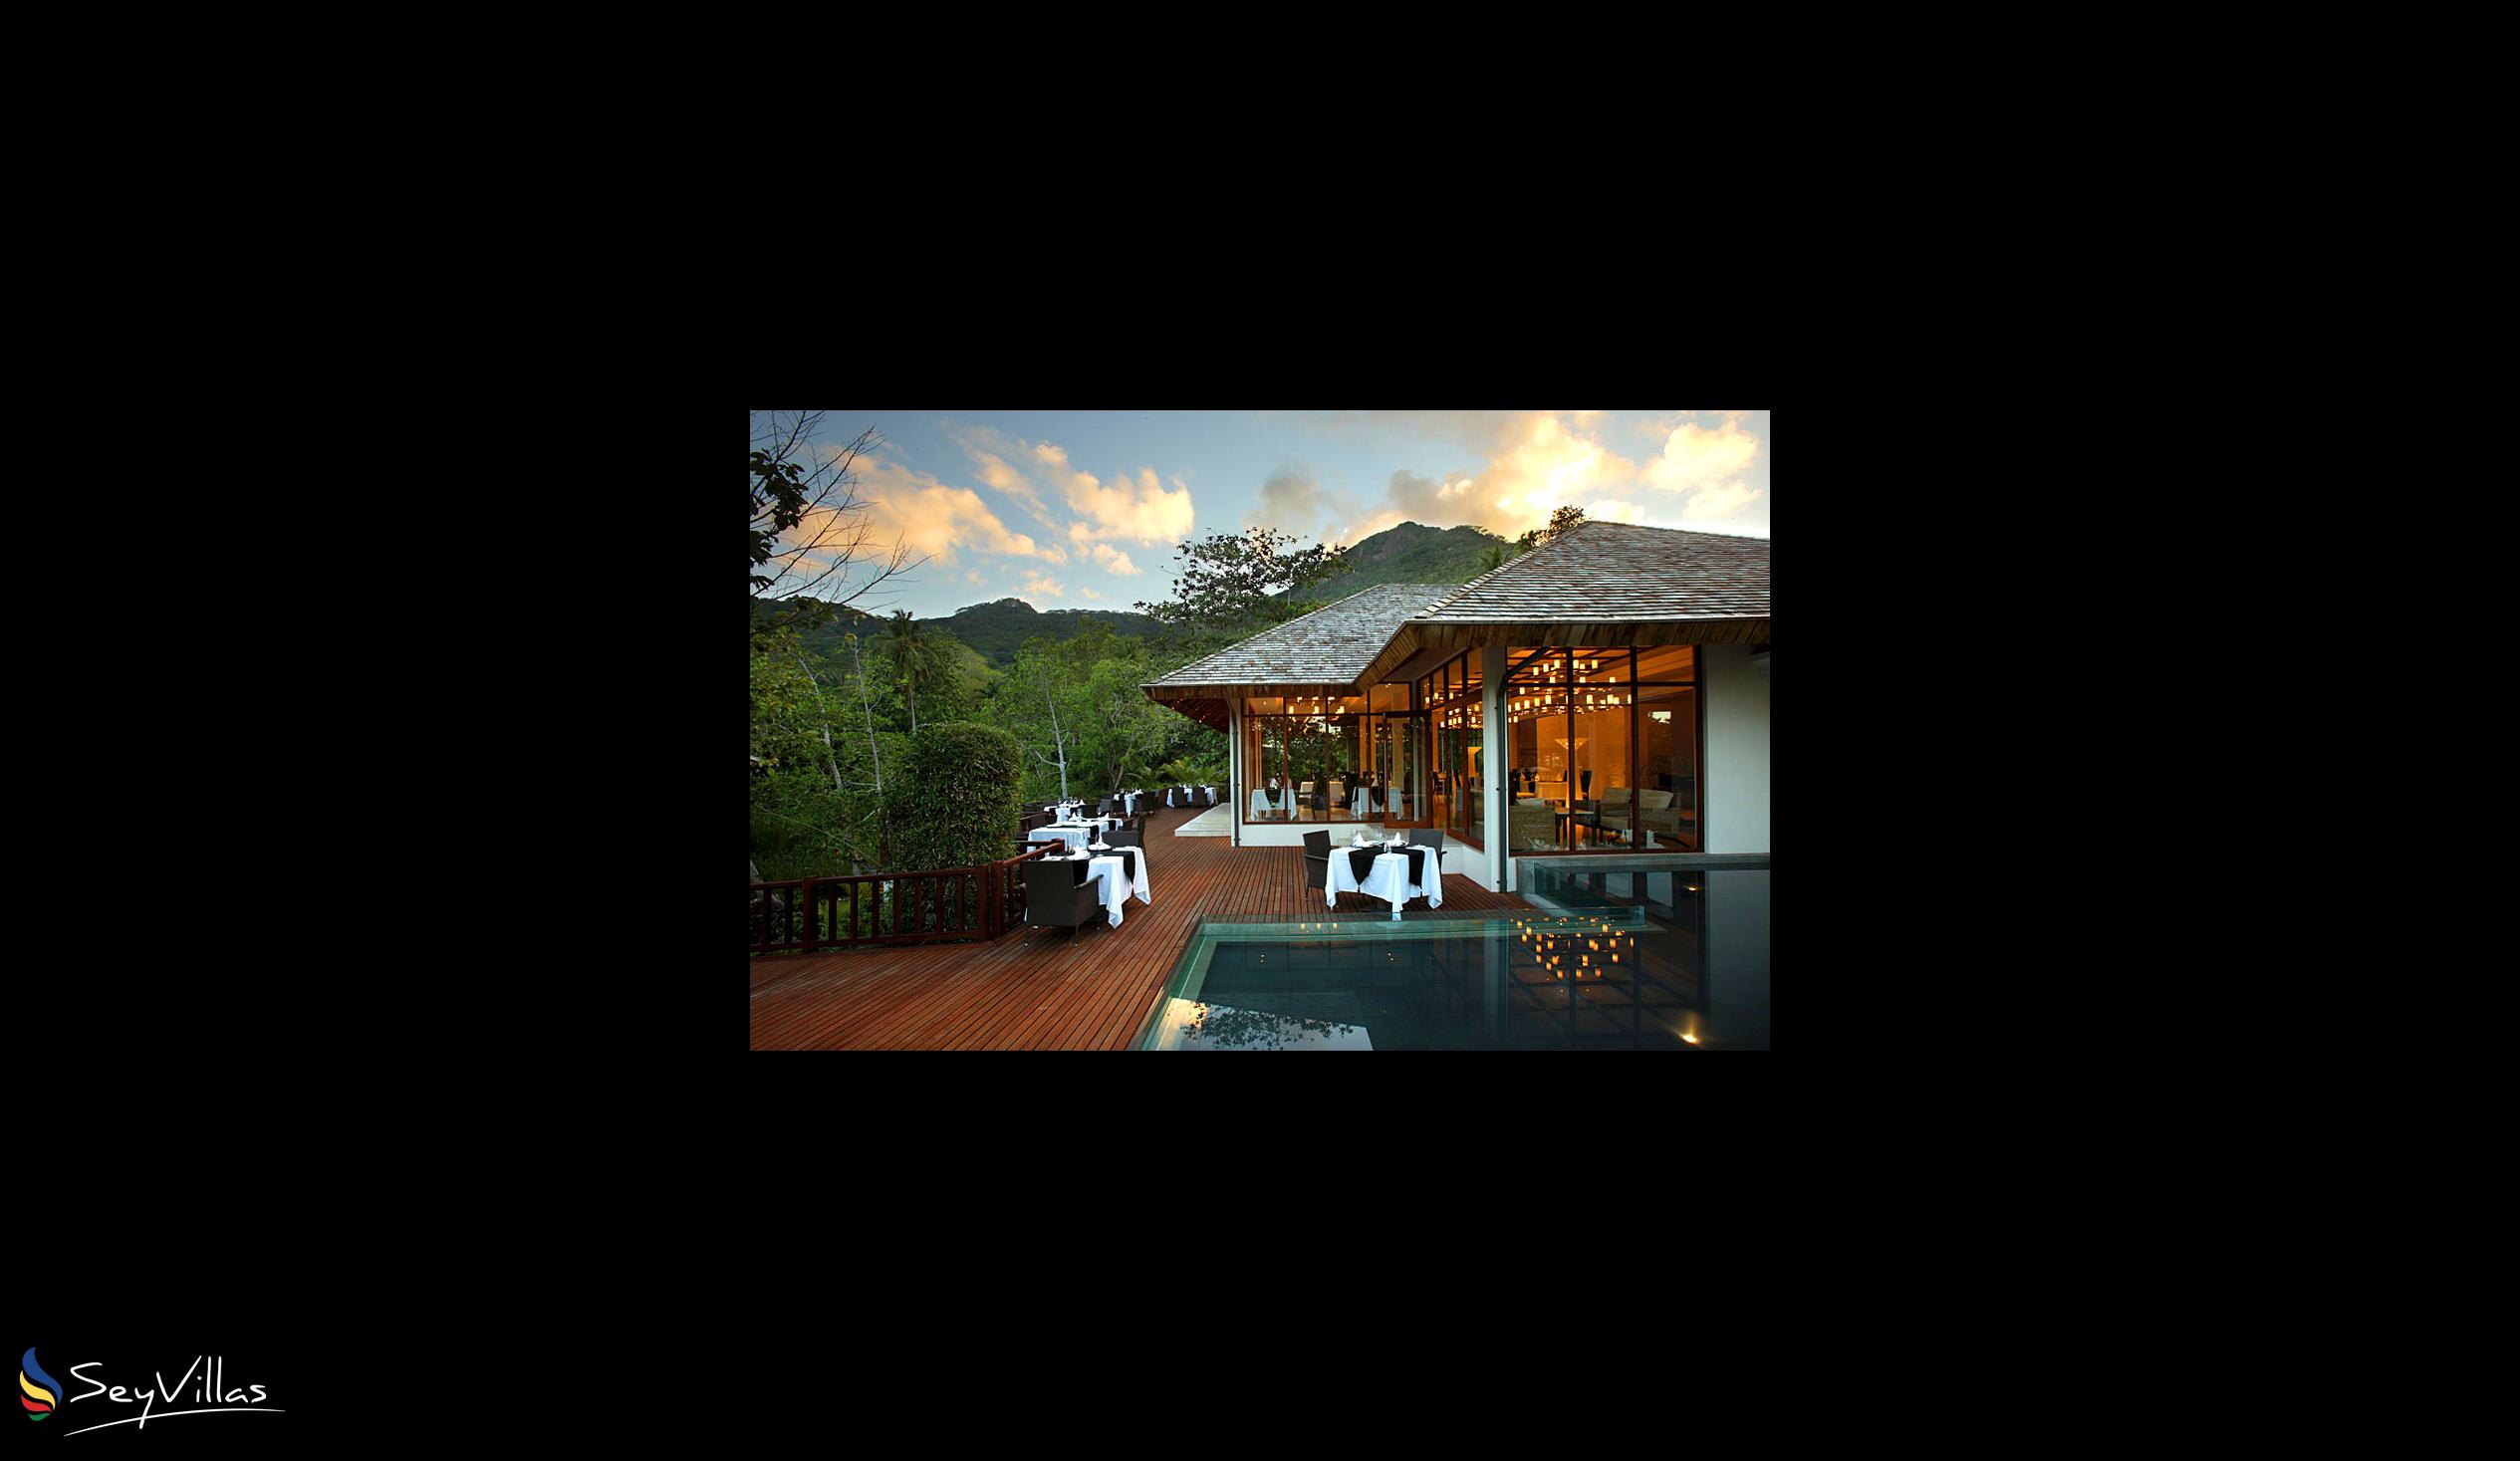 Foto 6: Hilton Seychelles Labriz Resort & Spa - Aussenbereich - Silhouette Island (Seychellen)